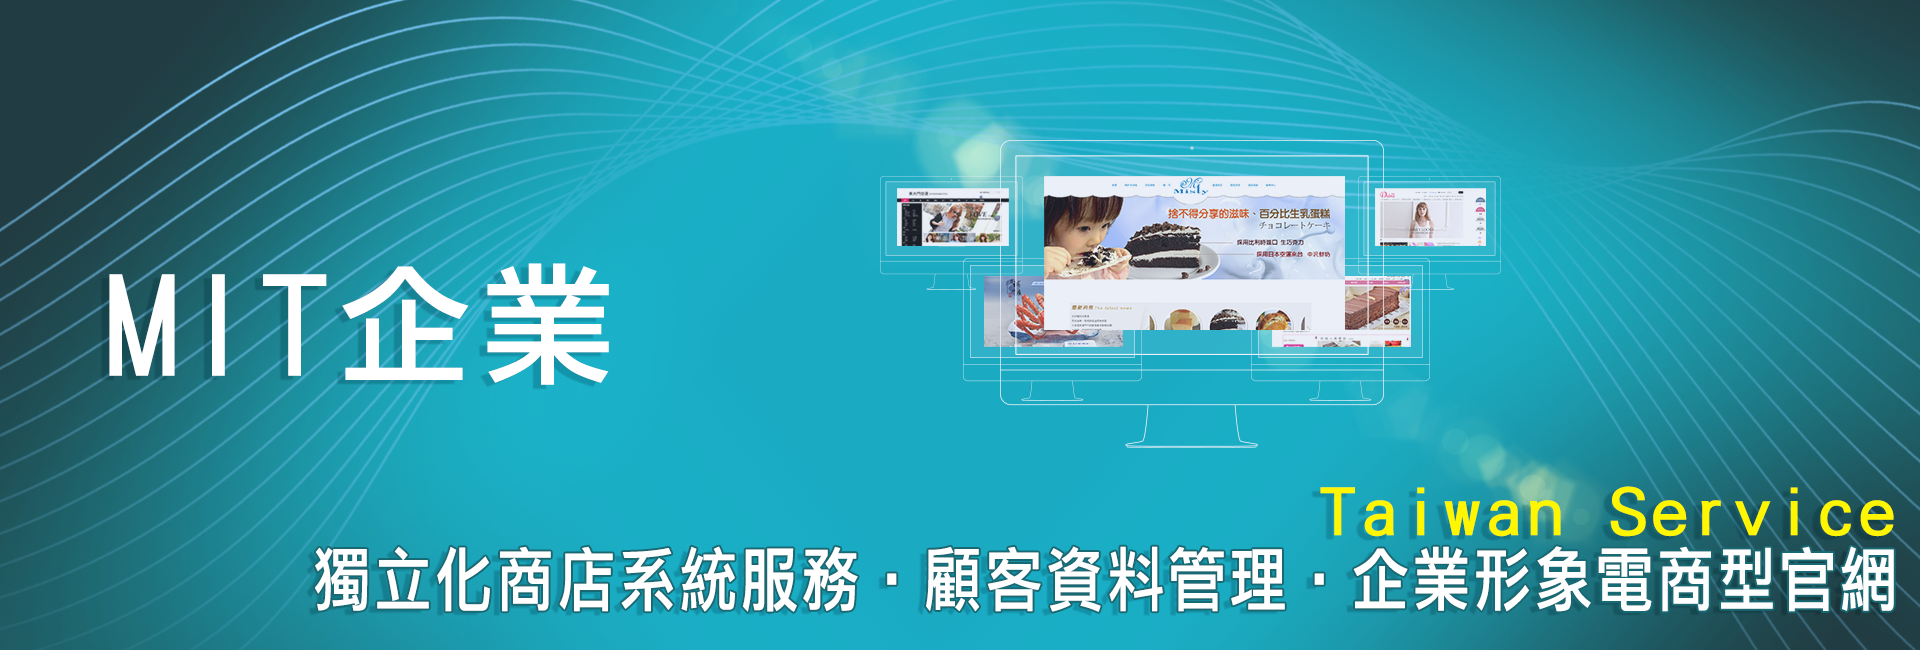 關於我們-Topwebx禾豐裕網路開店官網設計，一條龍包辦建立獨立網路開店官網，網路開店系統、電商線上網路開店、台灣在地網路開店